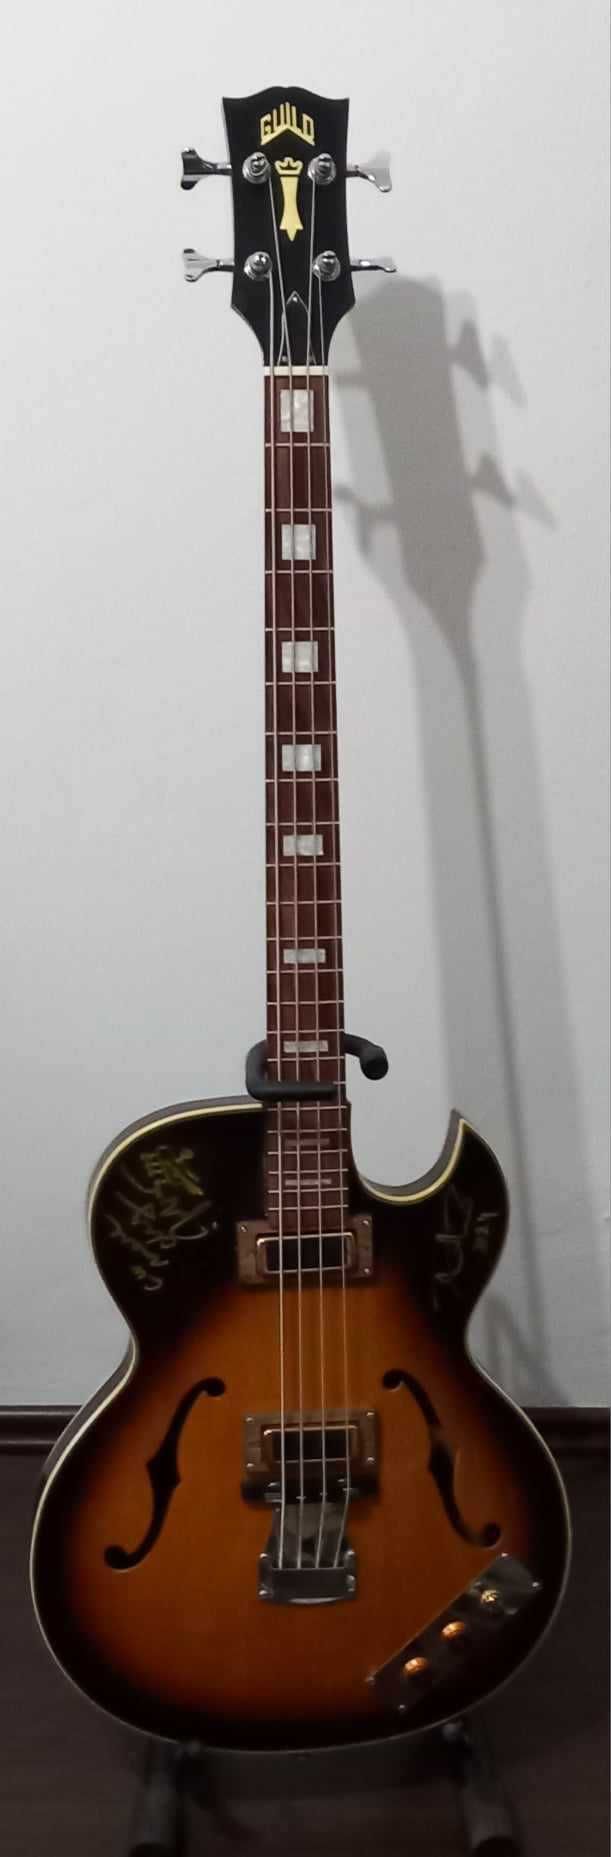 Vand chitara bass Guild vintage din 1960-70